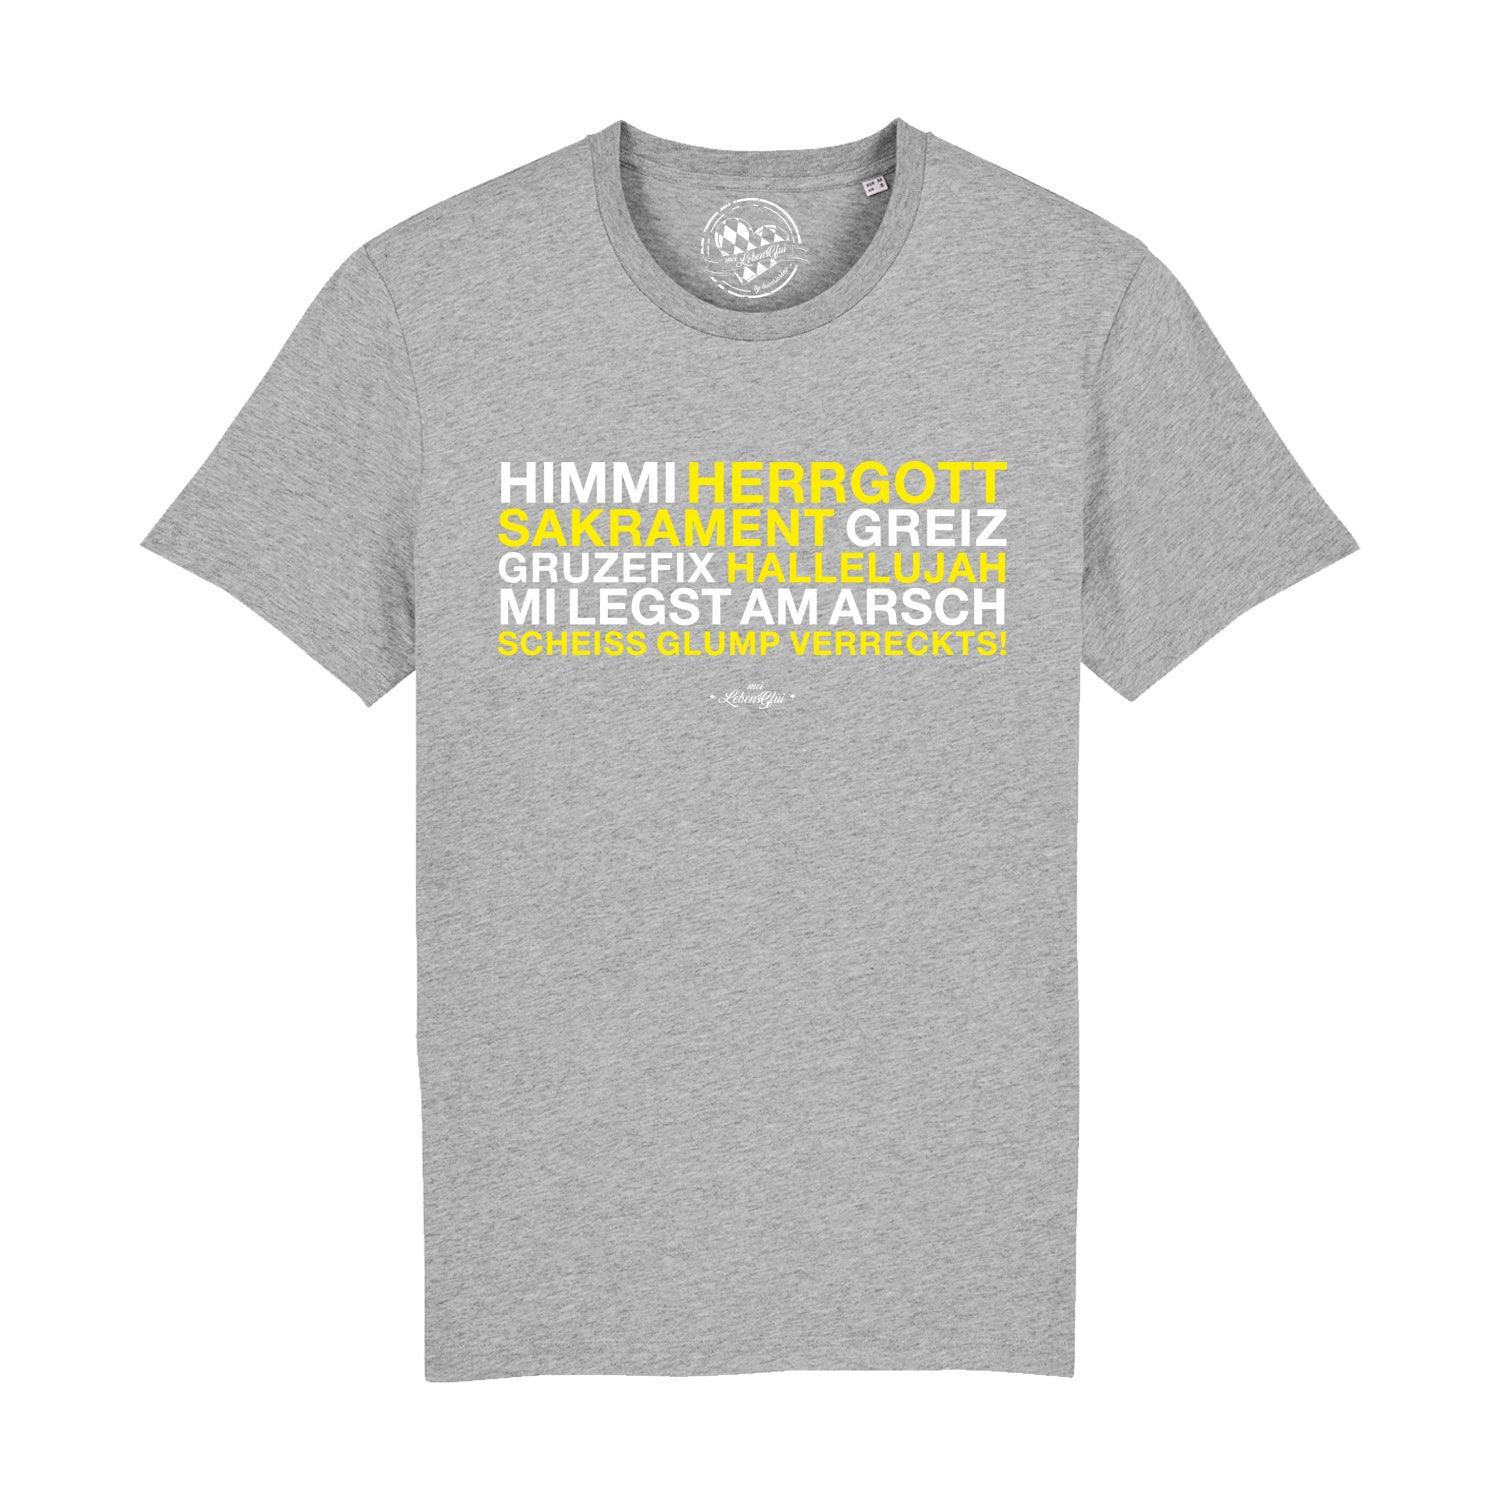 Herren T-Shirt "Himmi Herrgott" - bavariashop - mei LebensGfui